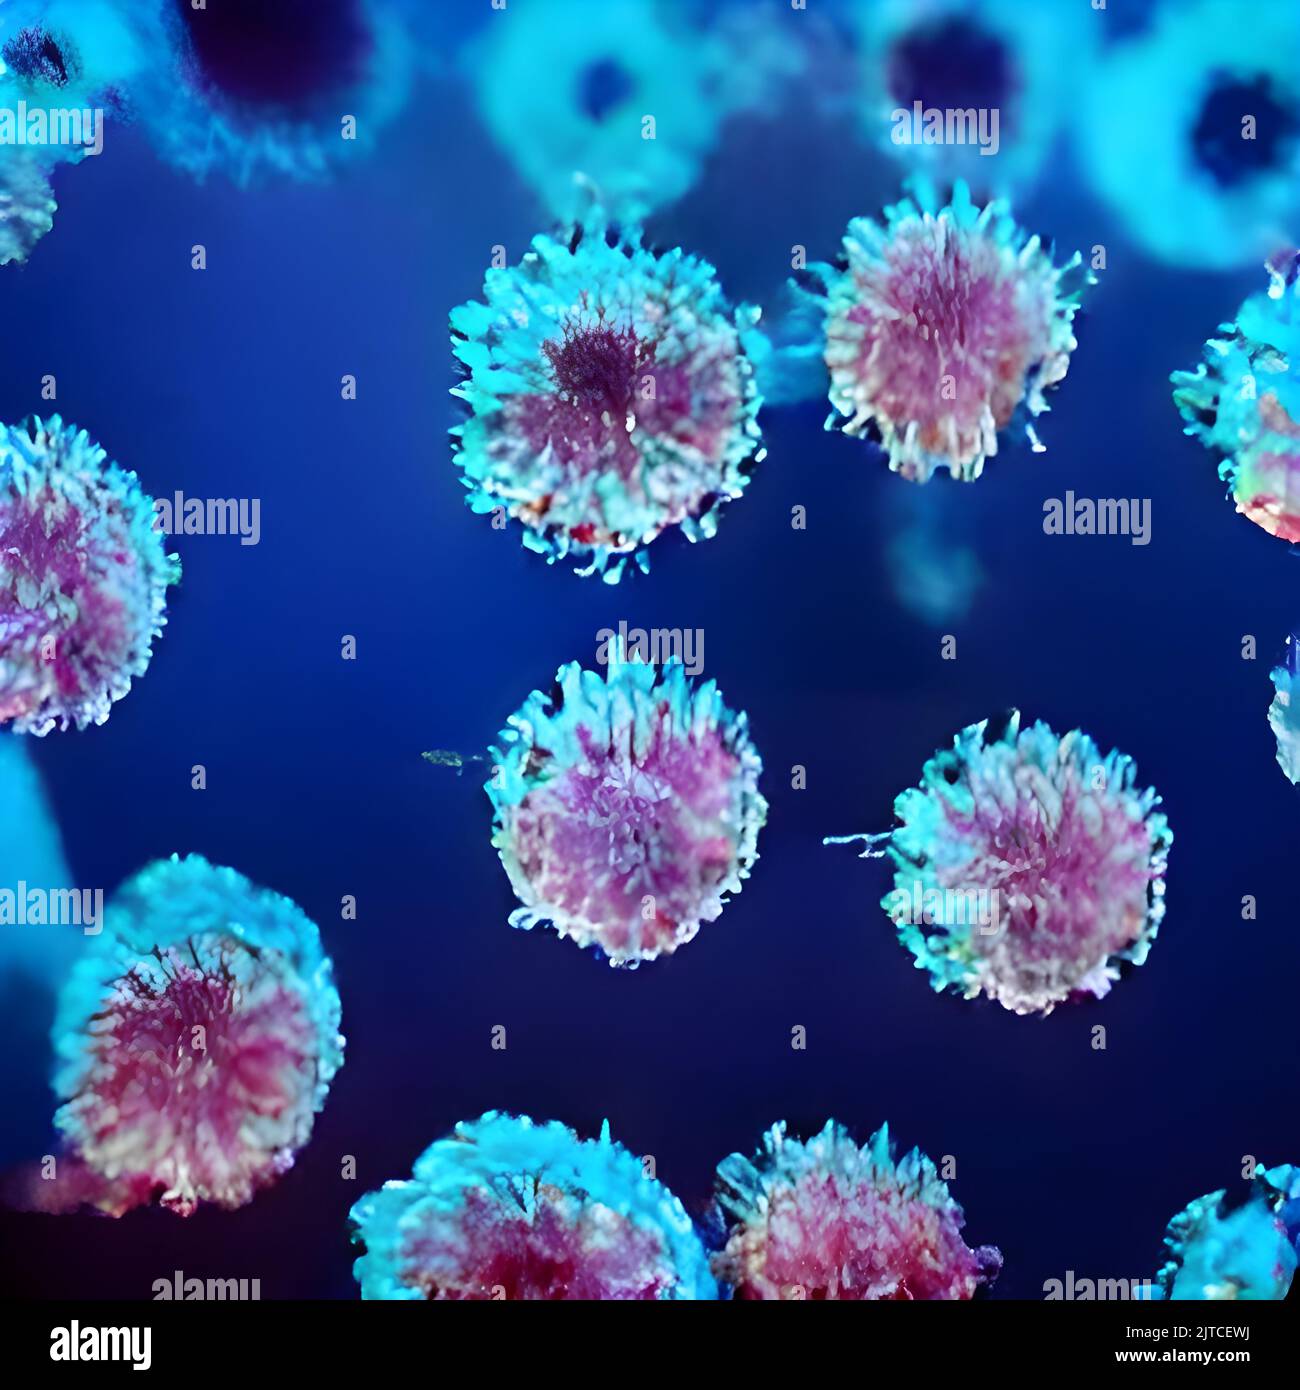 Vue microscopique des cellules flottantes du virus de la grippe. Maladie dangereuse Banque D'Images